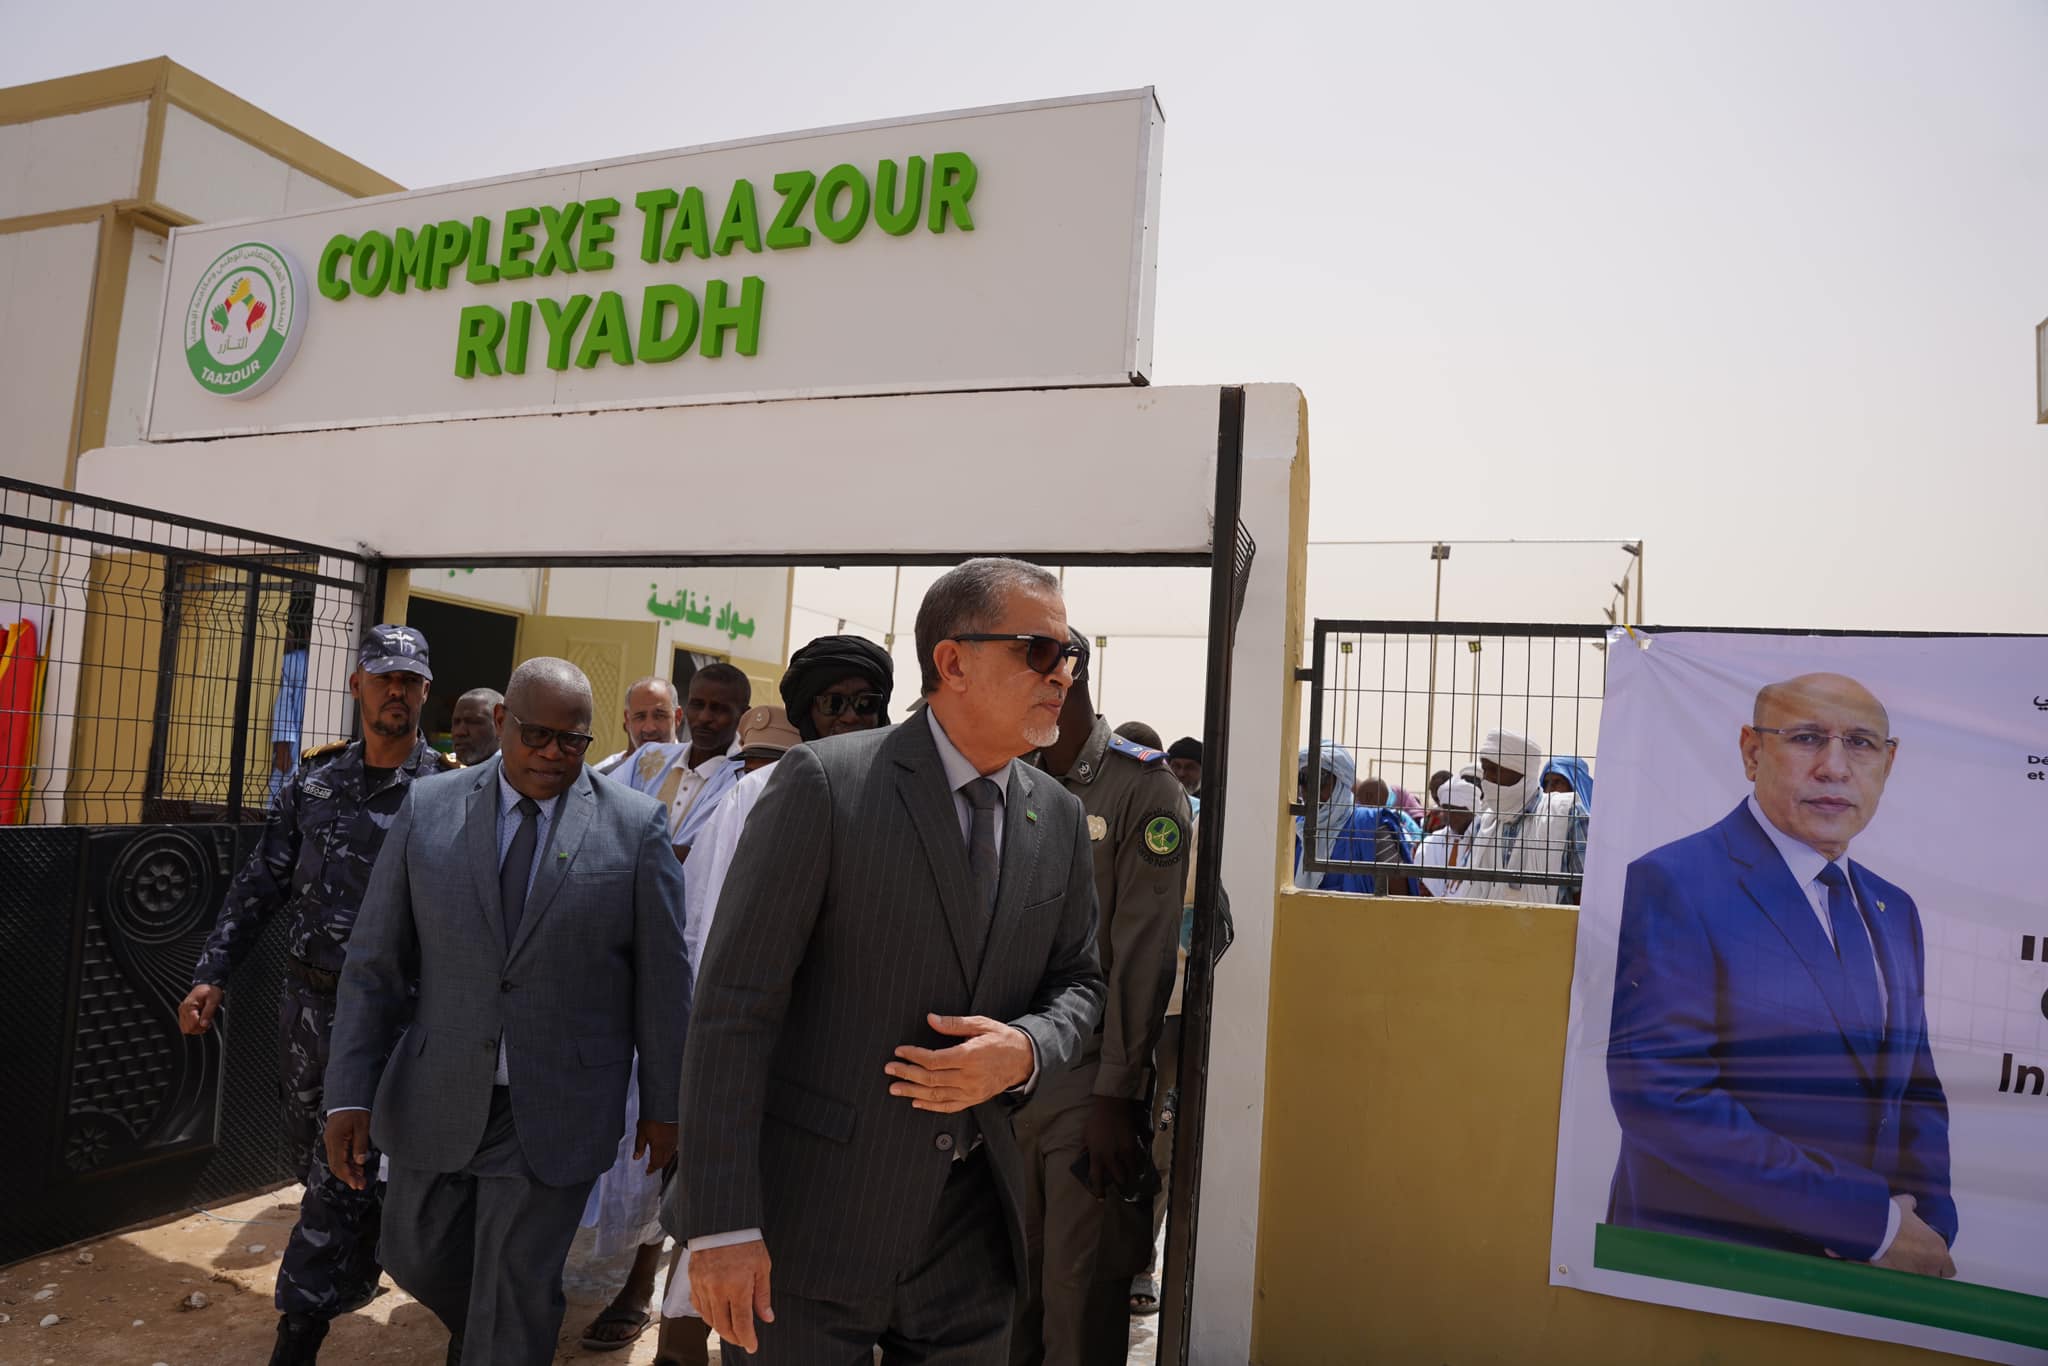 Photos : Taazour aujourd'hui à Riyad, inauguration de services de proximité, financements de projets, dons